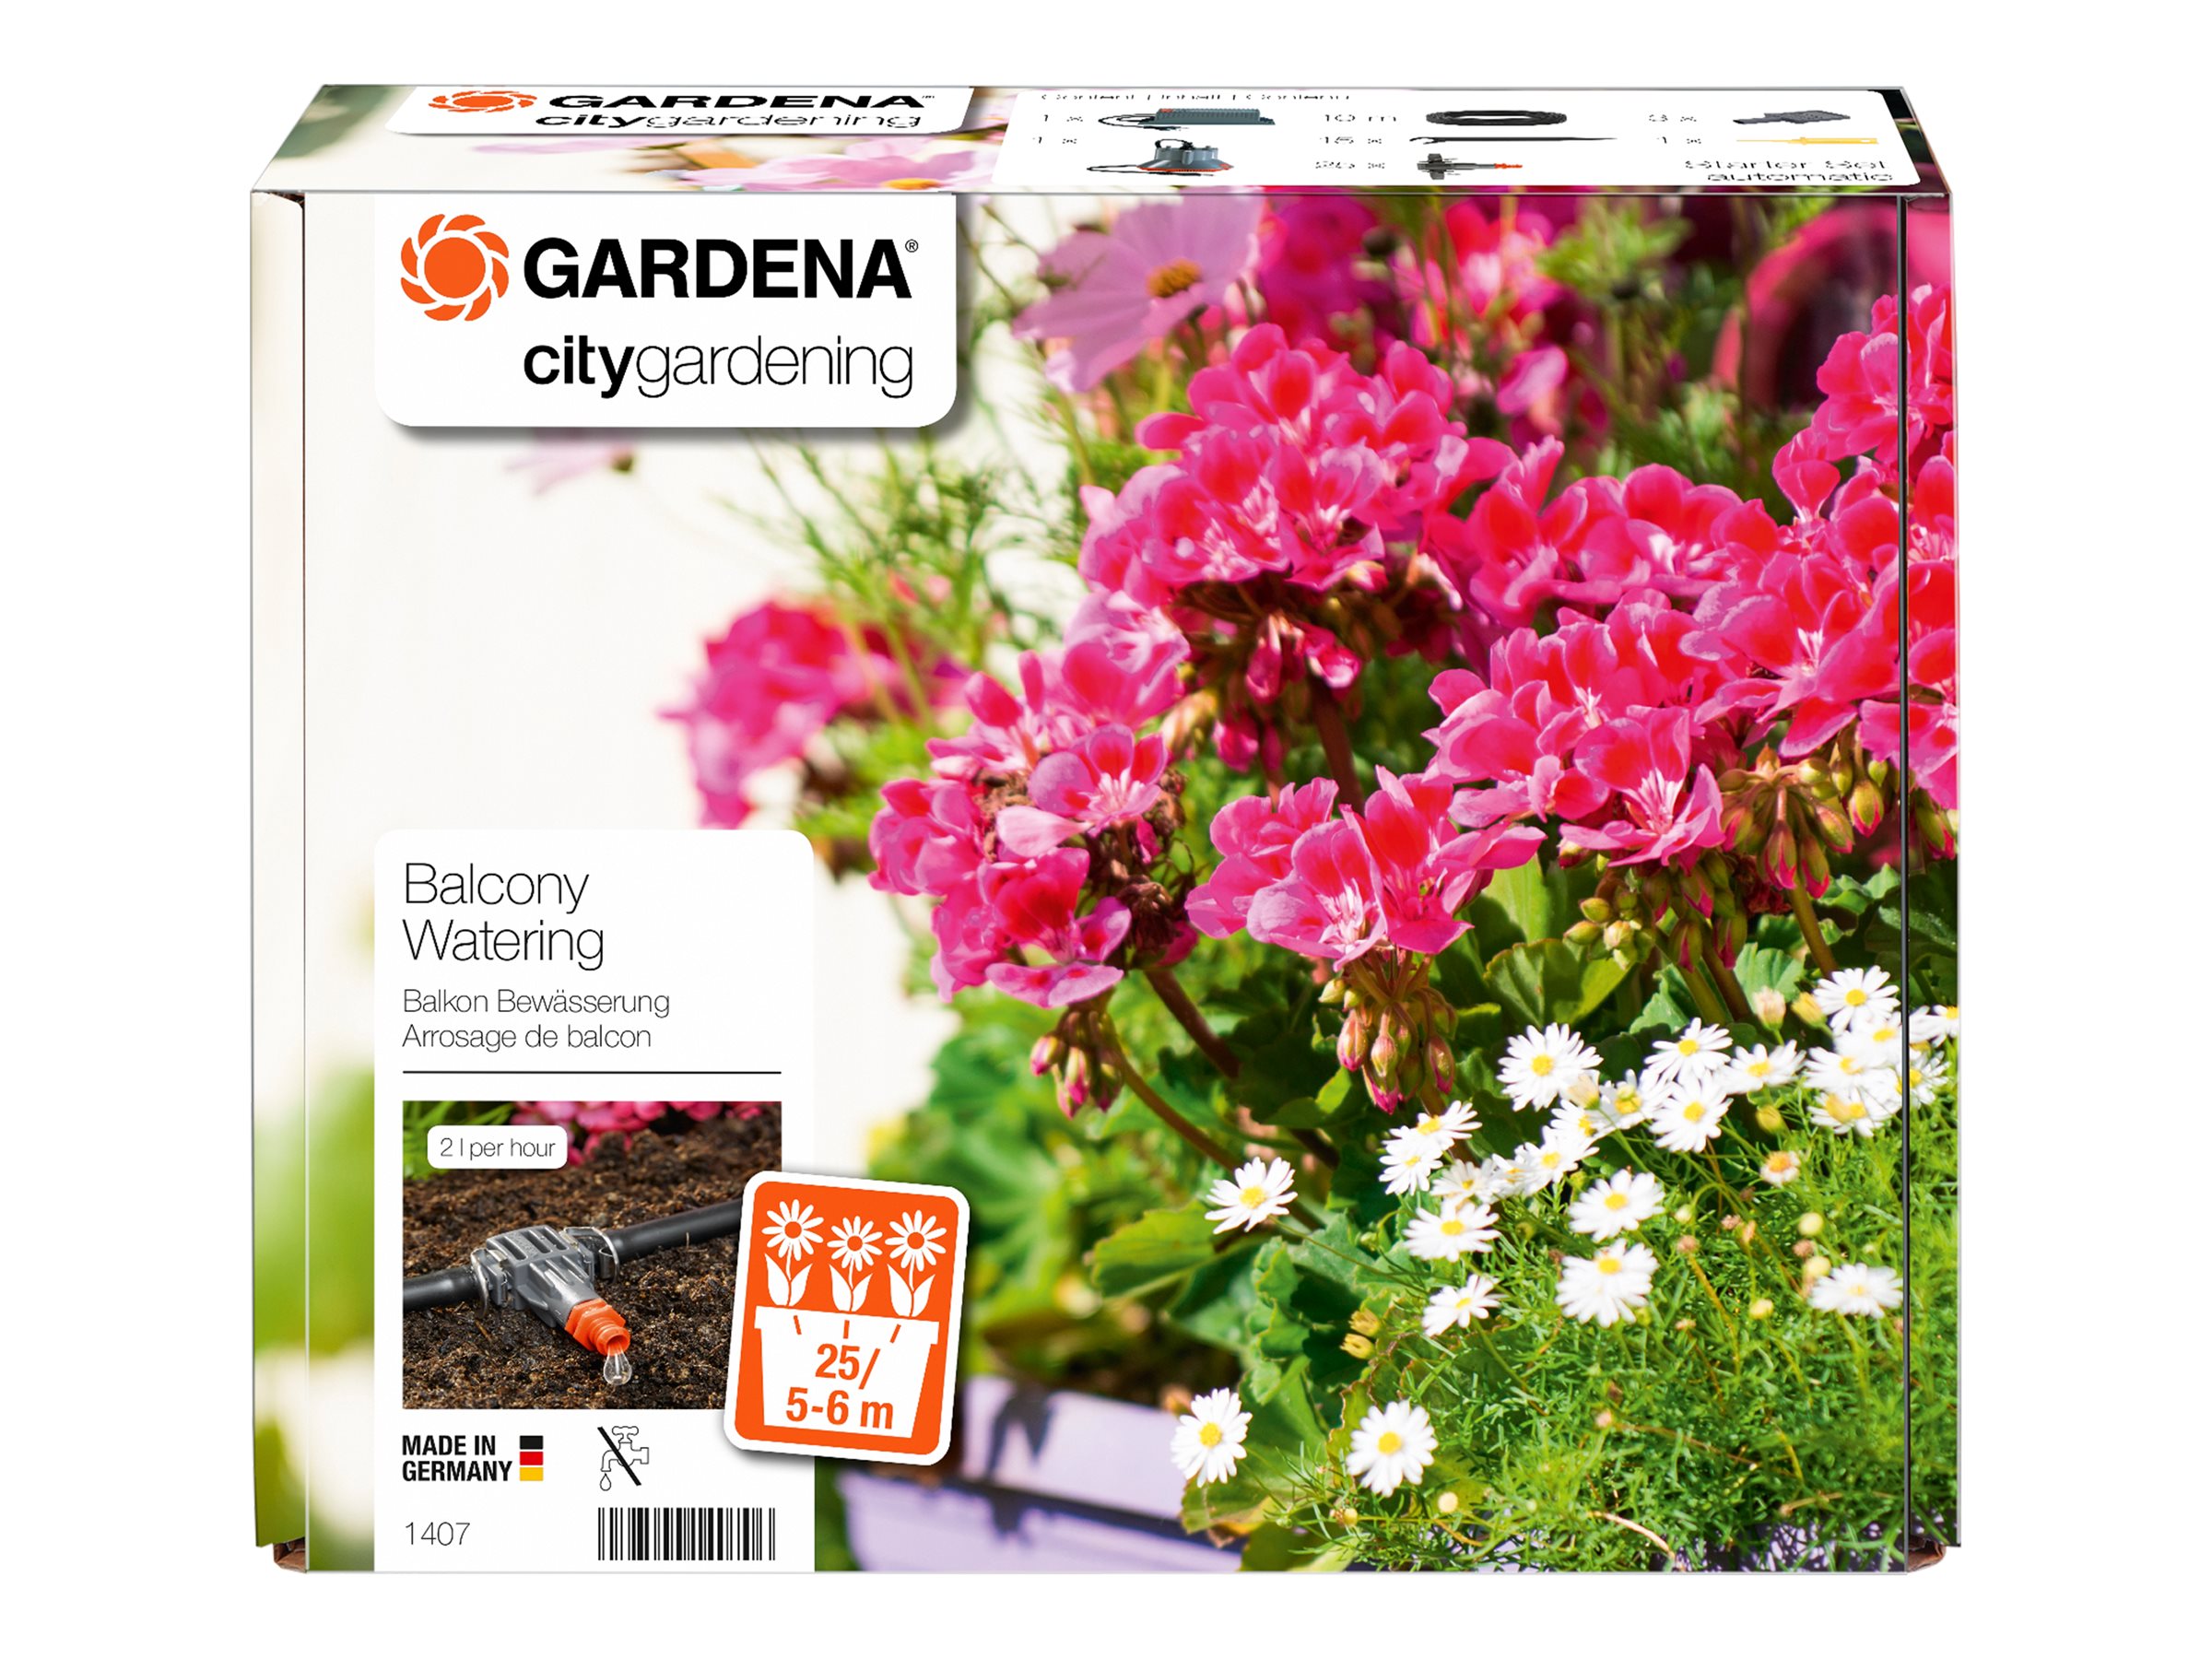 Gardena Blumenkastenbewässerung Vollautomatisch